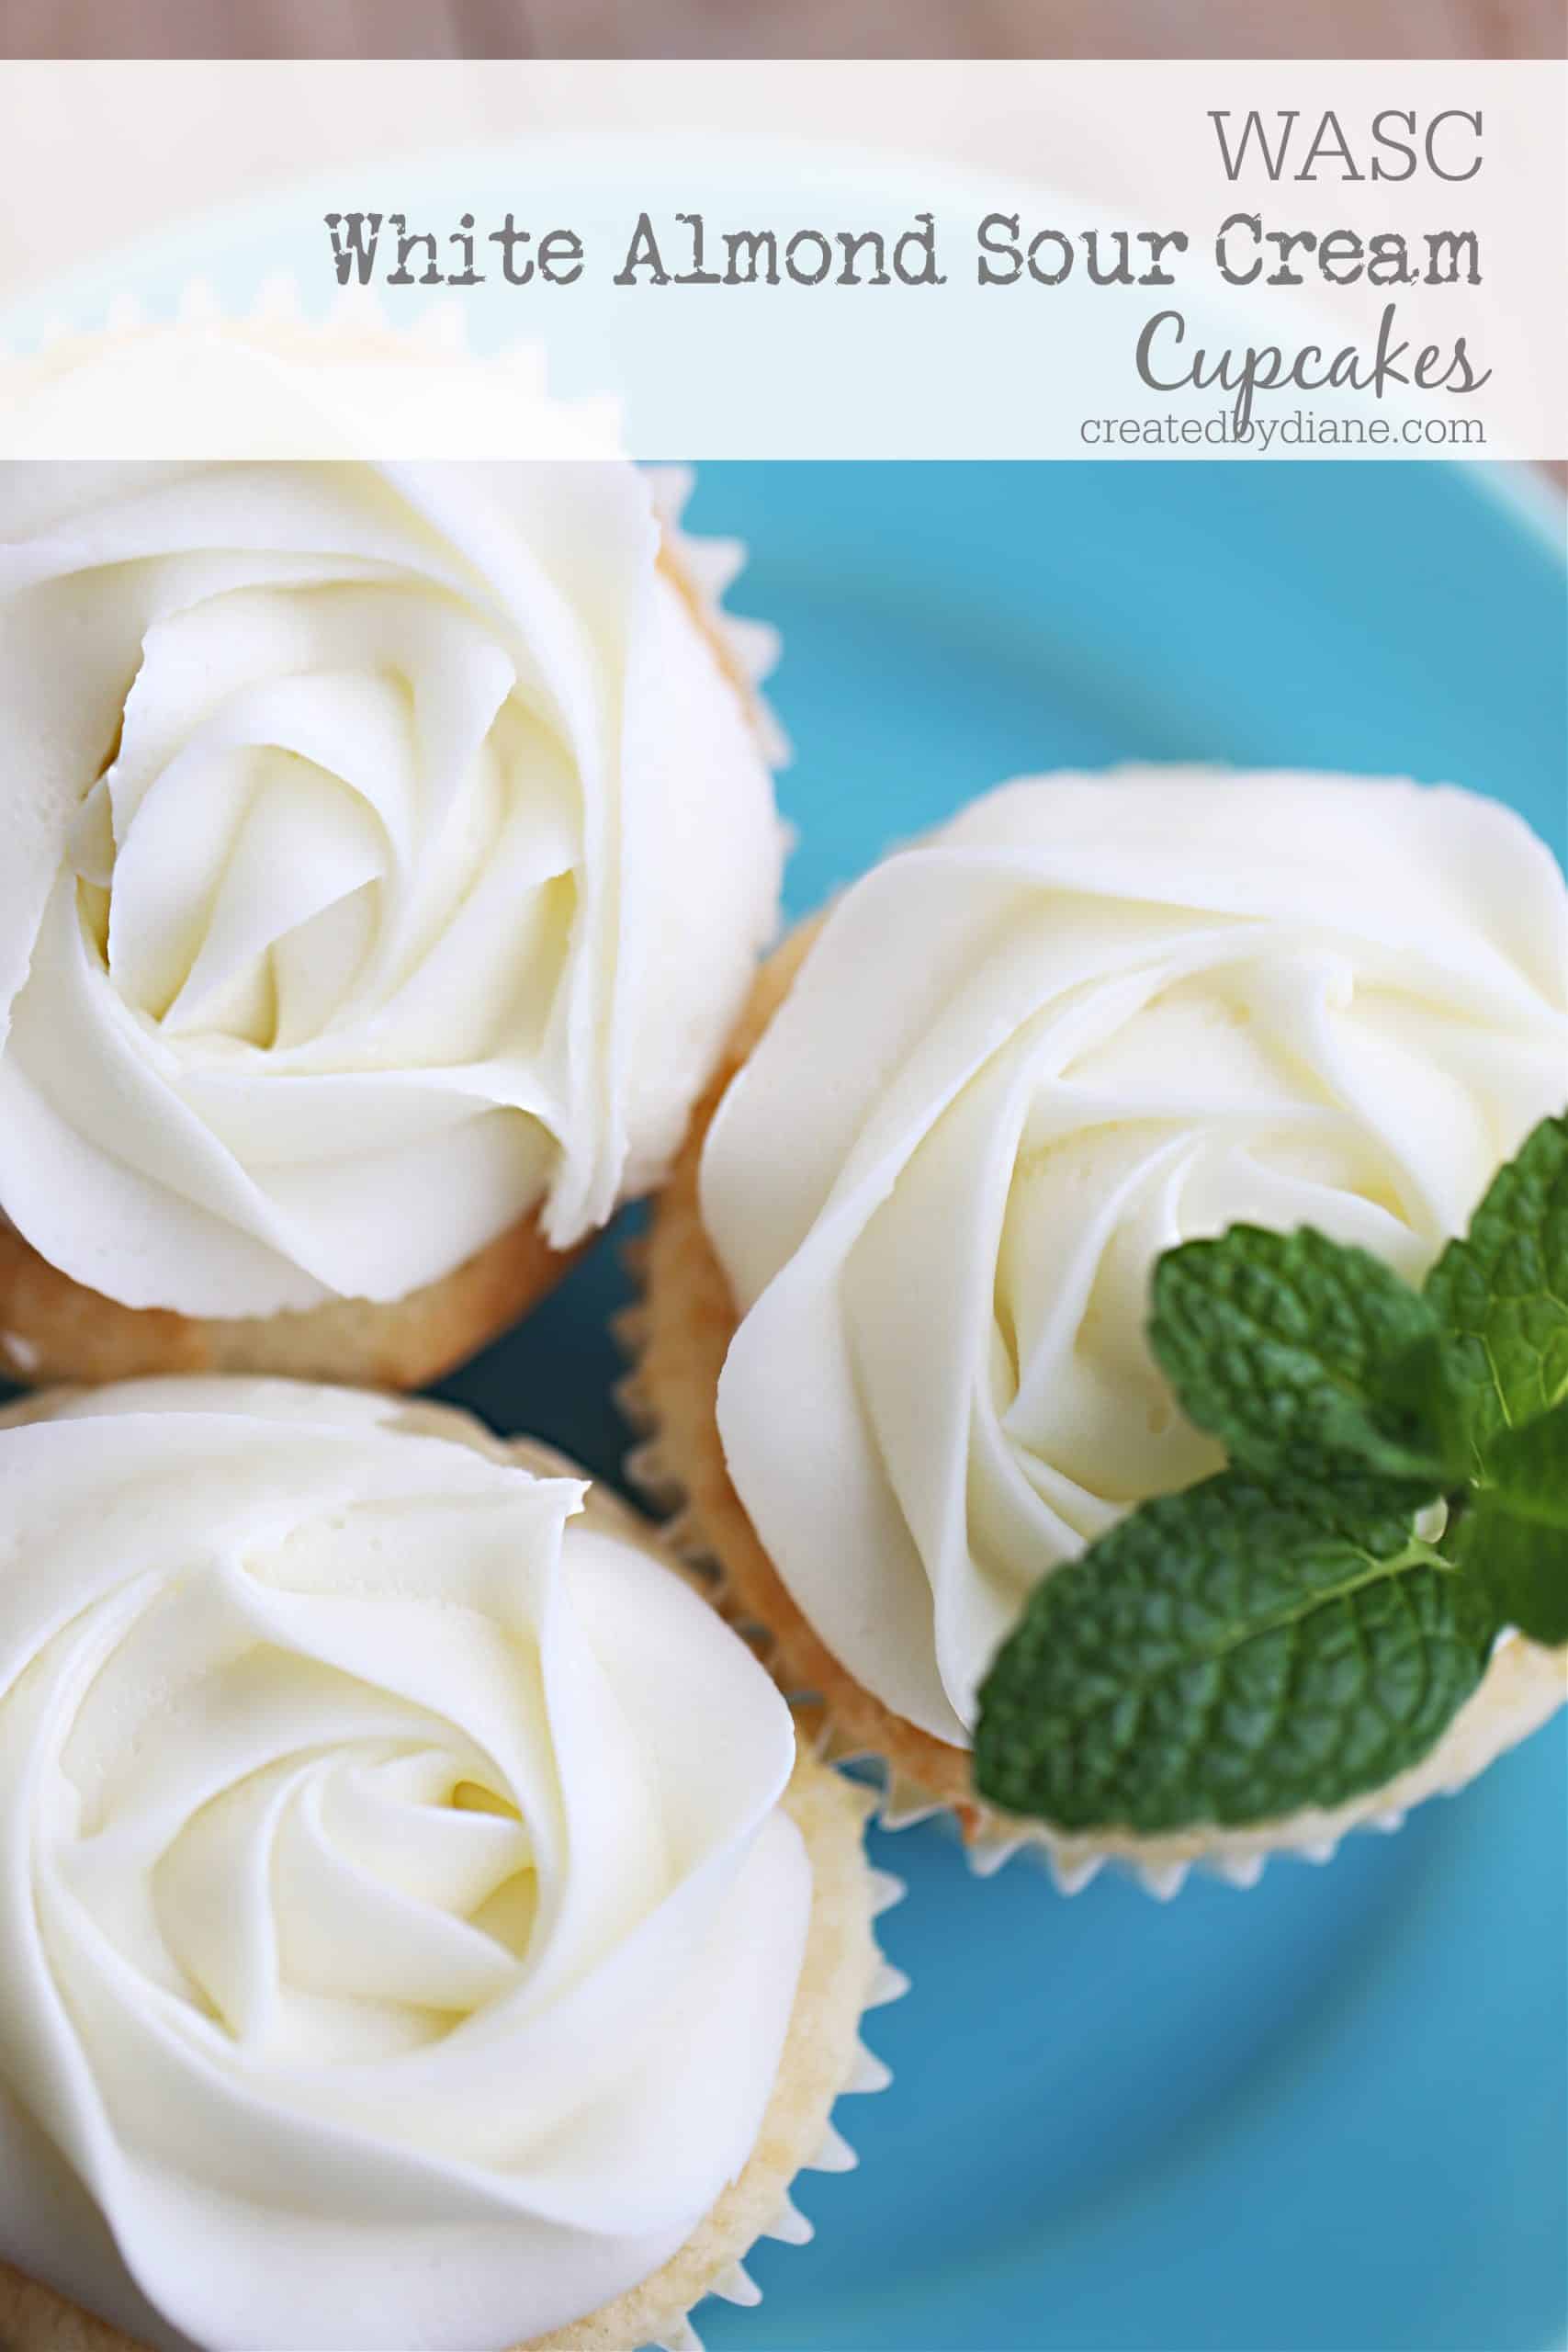 White Almond Sour Cream Cupcakes (WASC)